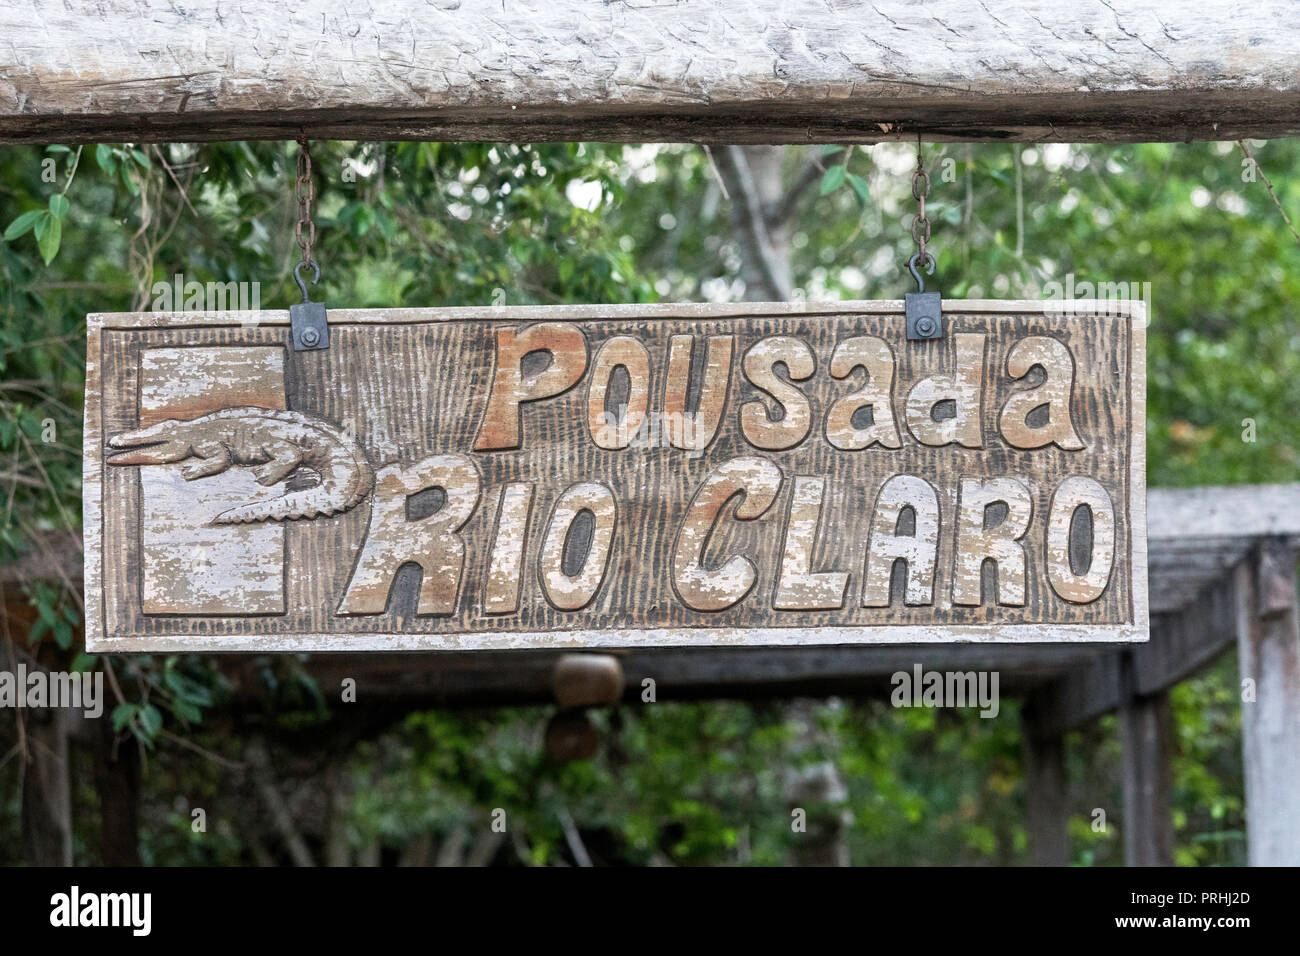 Sign at the Pousado Rio Claro Fazenda, Mato Grosso, Pantanal, Brazil. Stock Photo